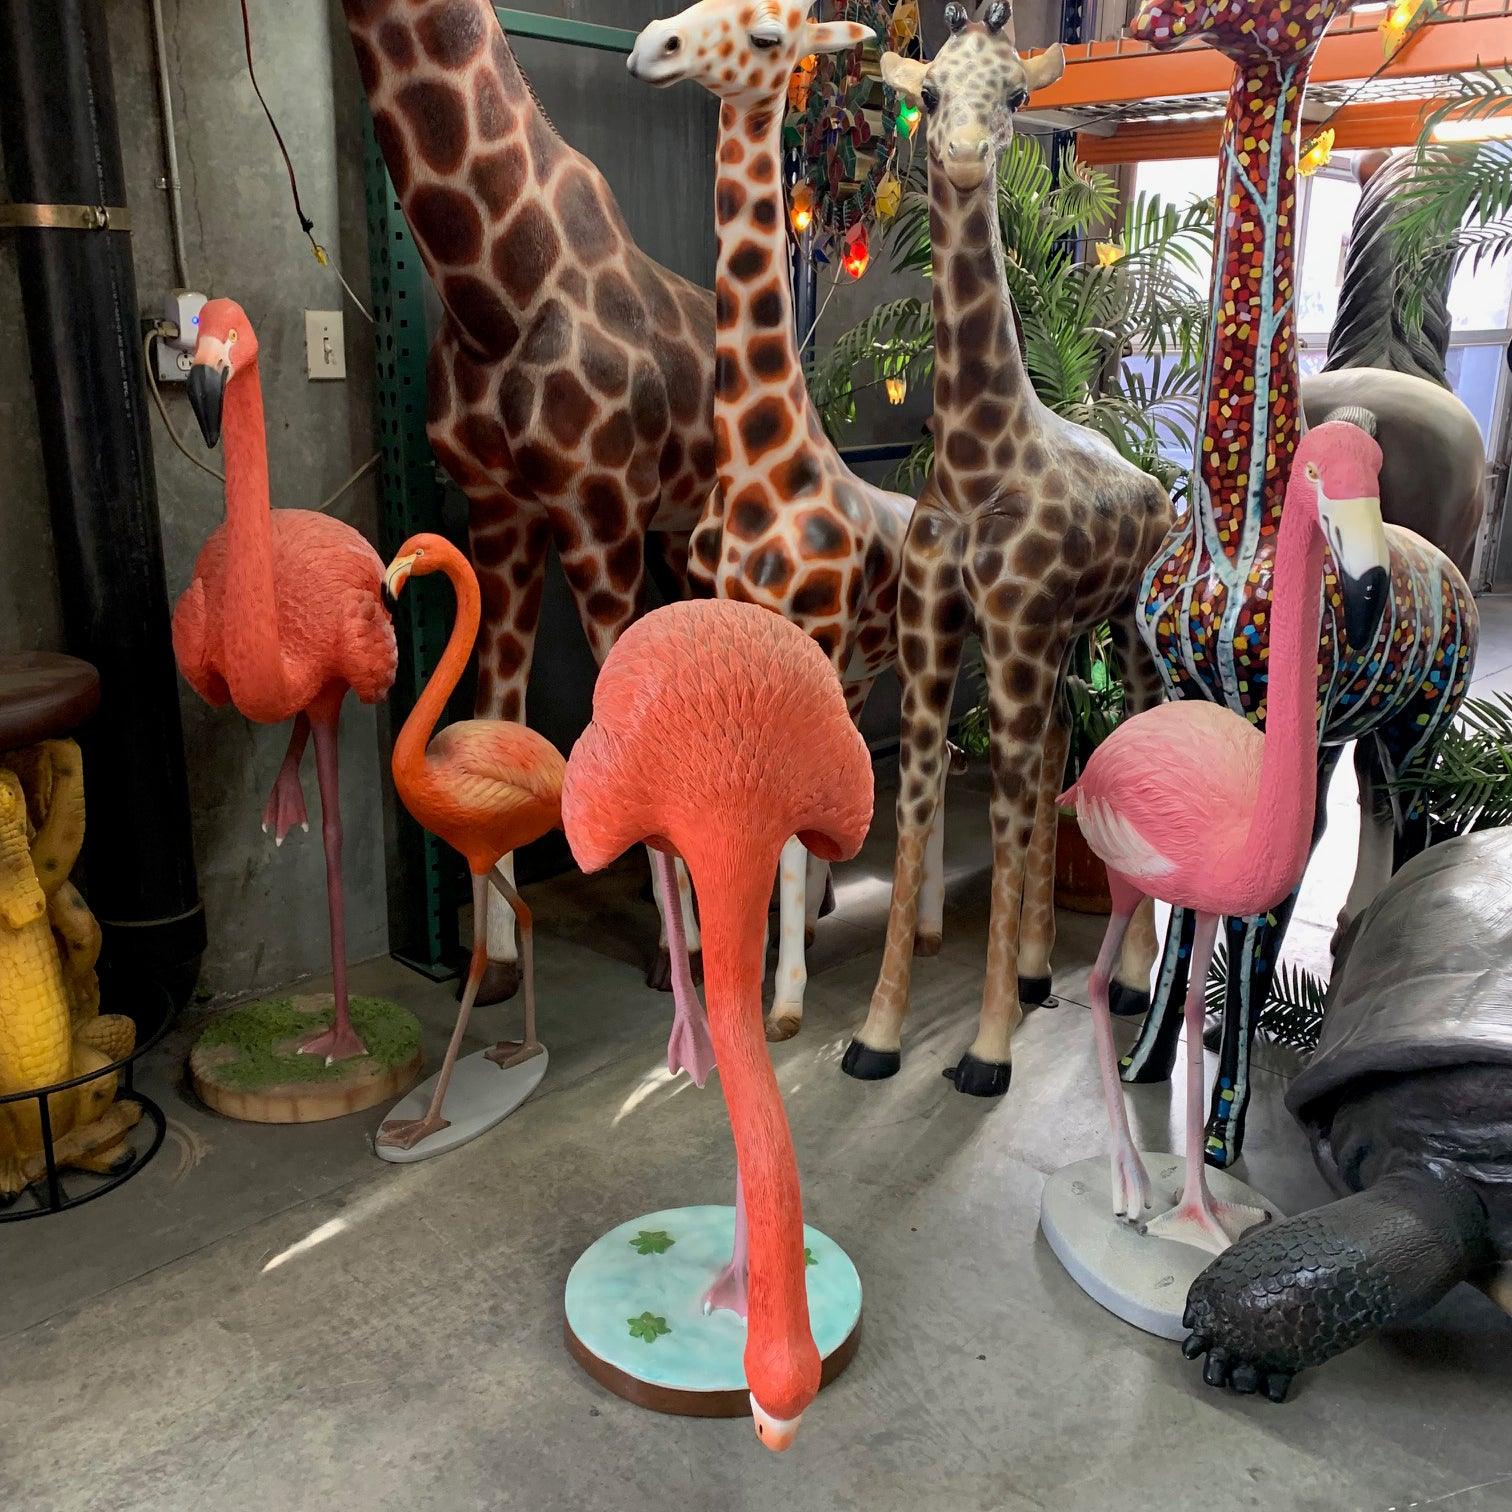 Flamingo Head Down Life Size Statue Prop - LM Treasures Prop Rentals 